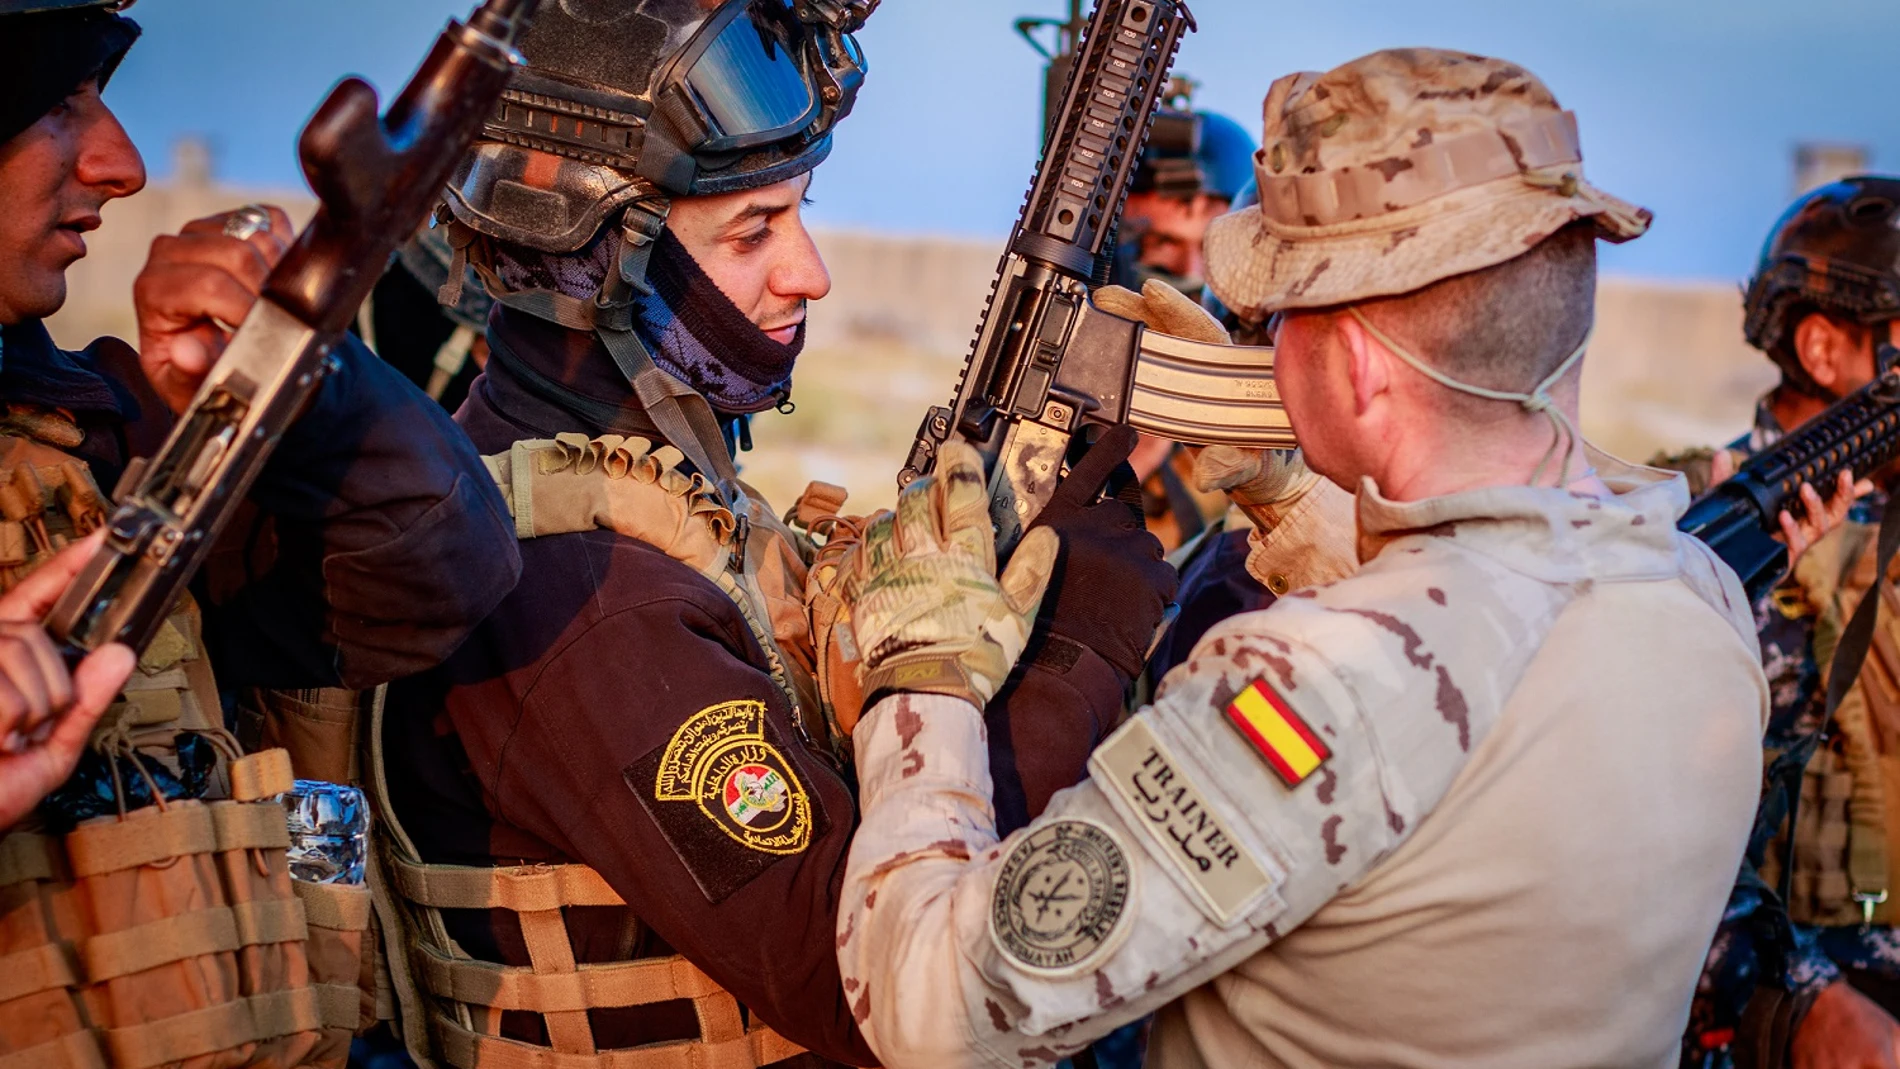 Un militar español instruye a soldados iraquíes